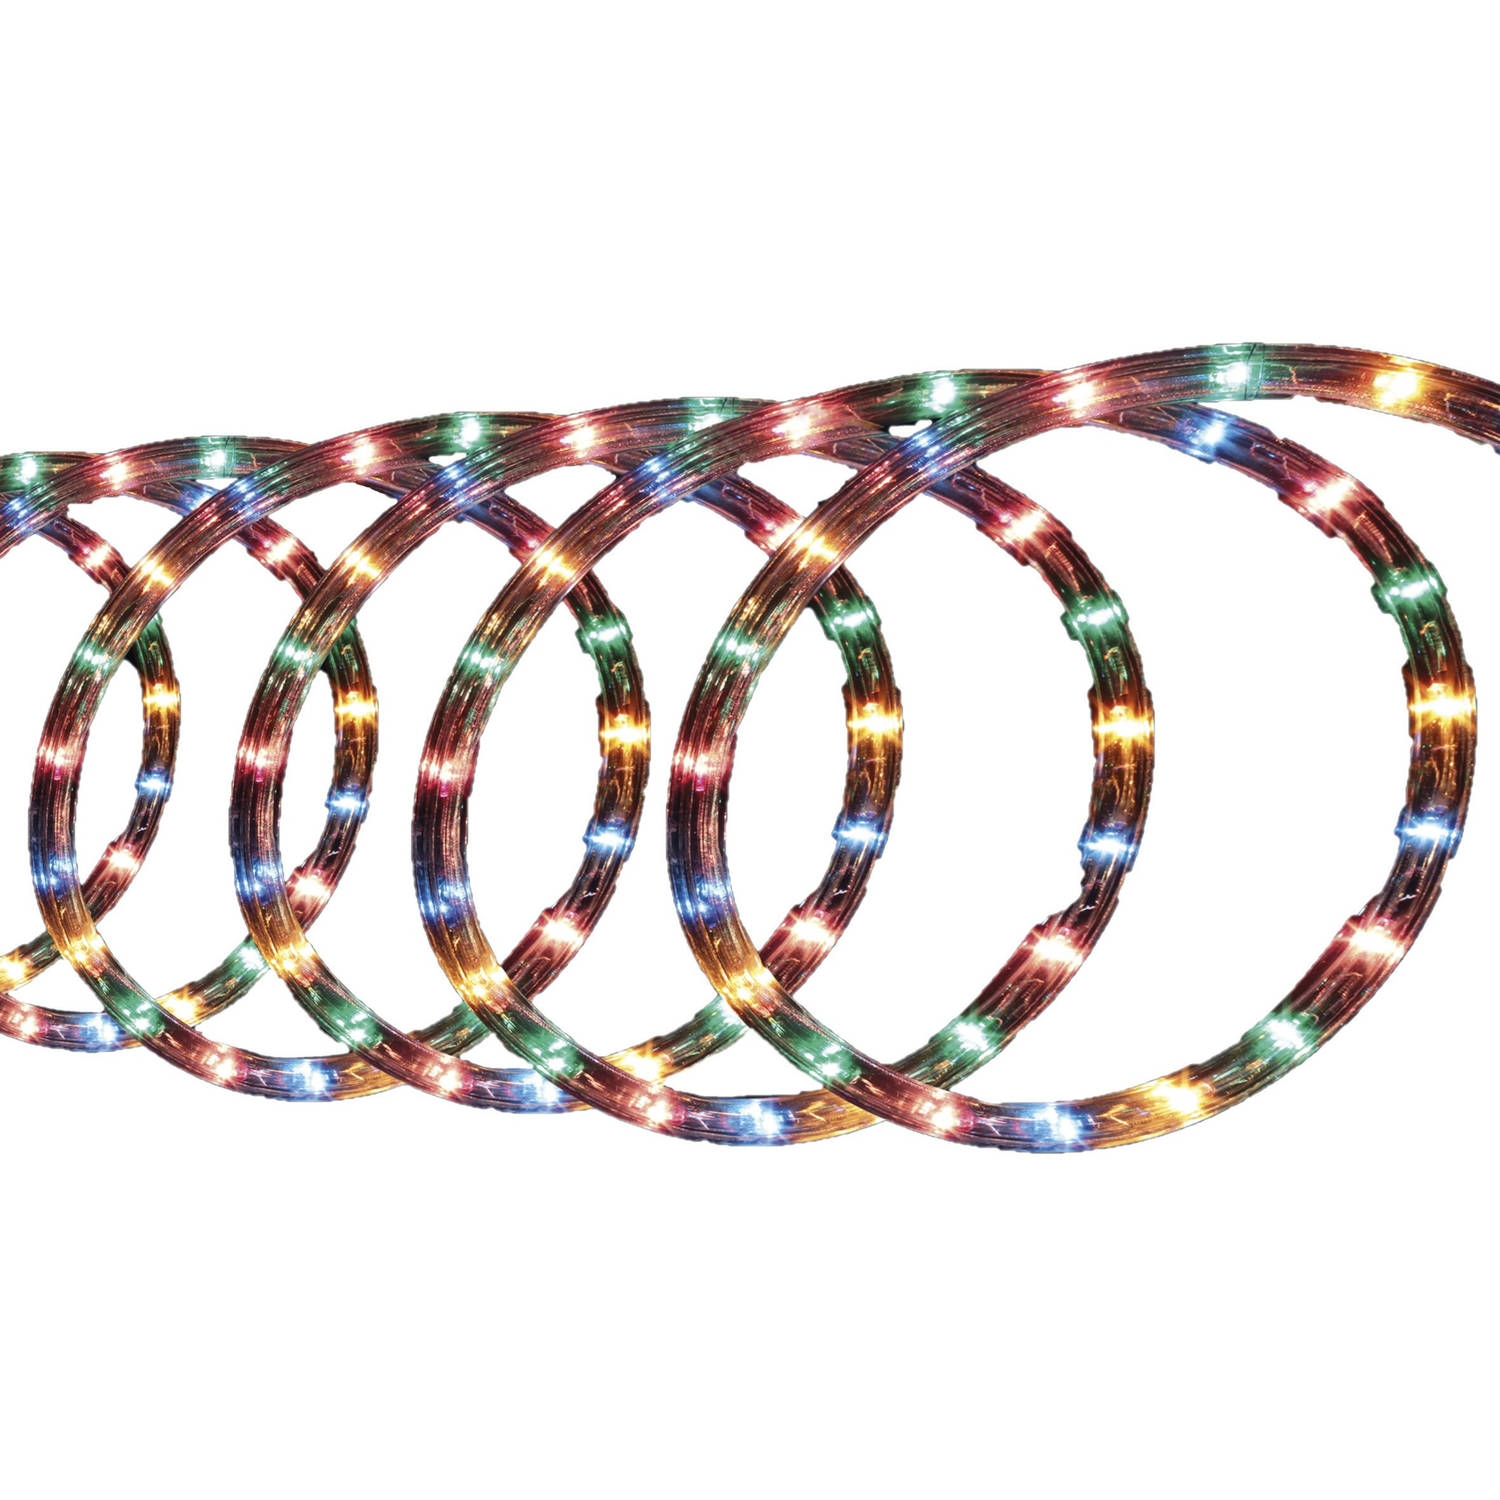 Lichtslang-slangverlichting 6 Meter Met 108 Lampjes Gekleurd Lichtslangen